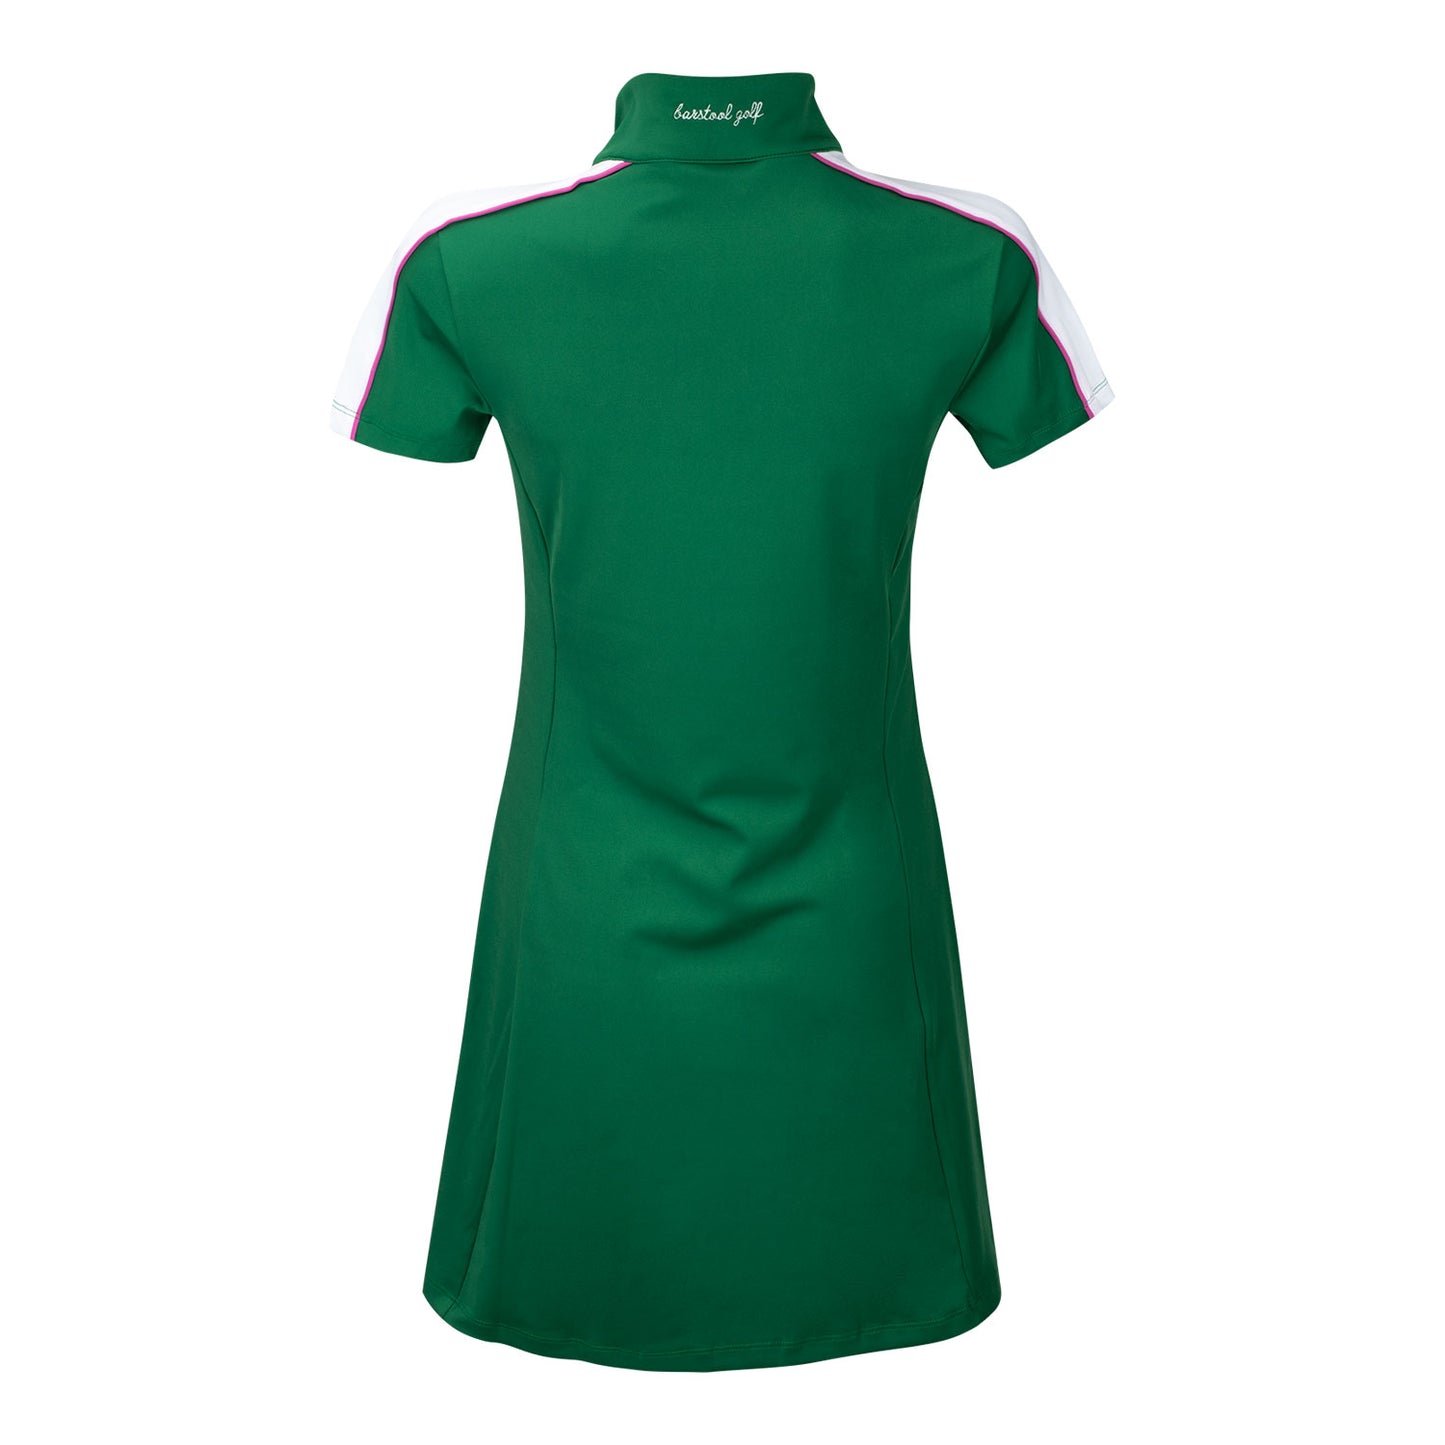 Barstool Golf LPGA Women's Dress in Green - Back View